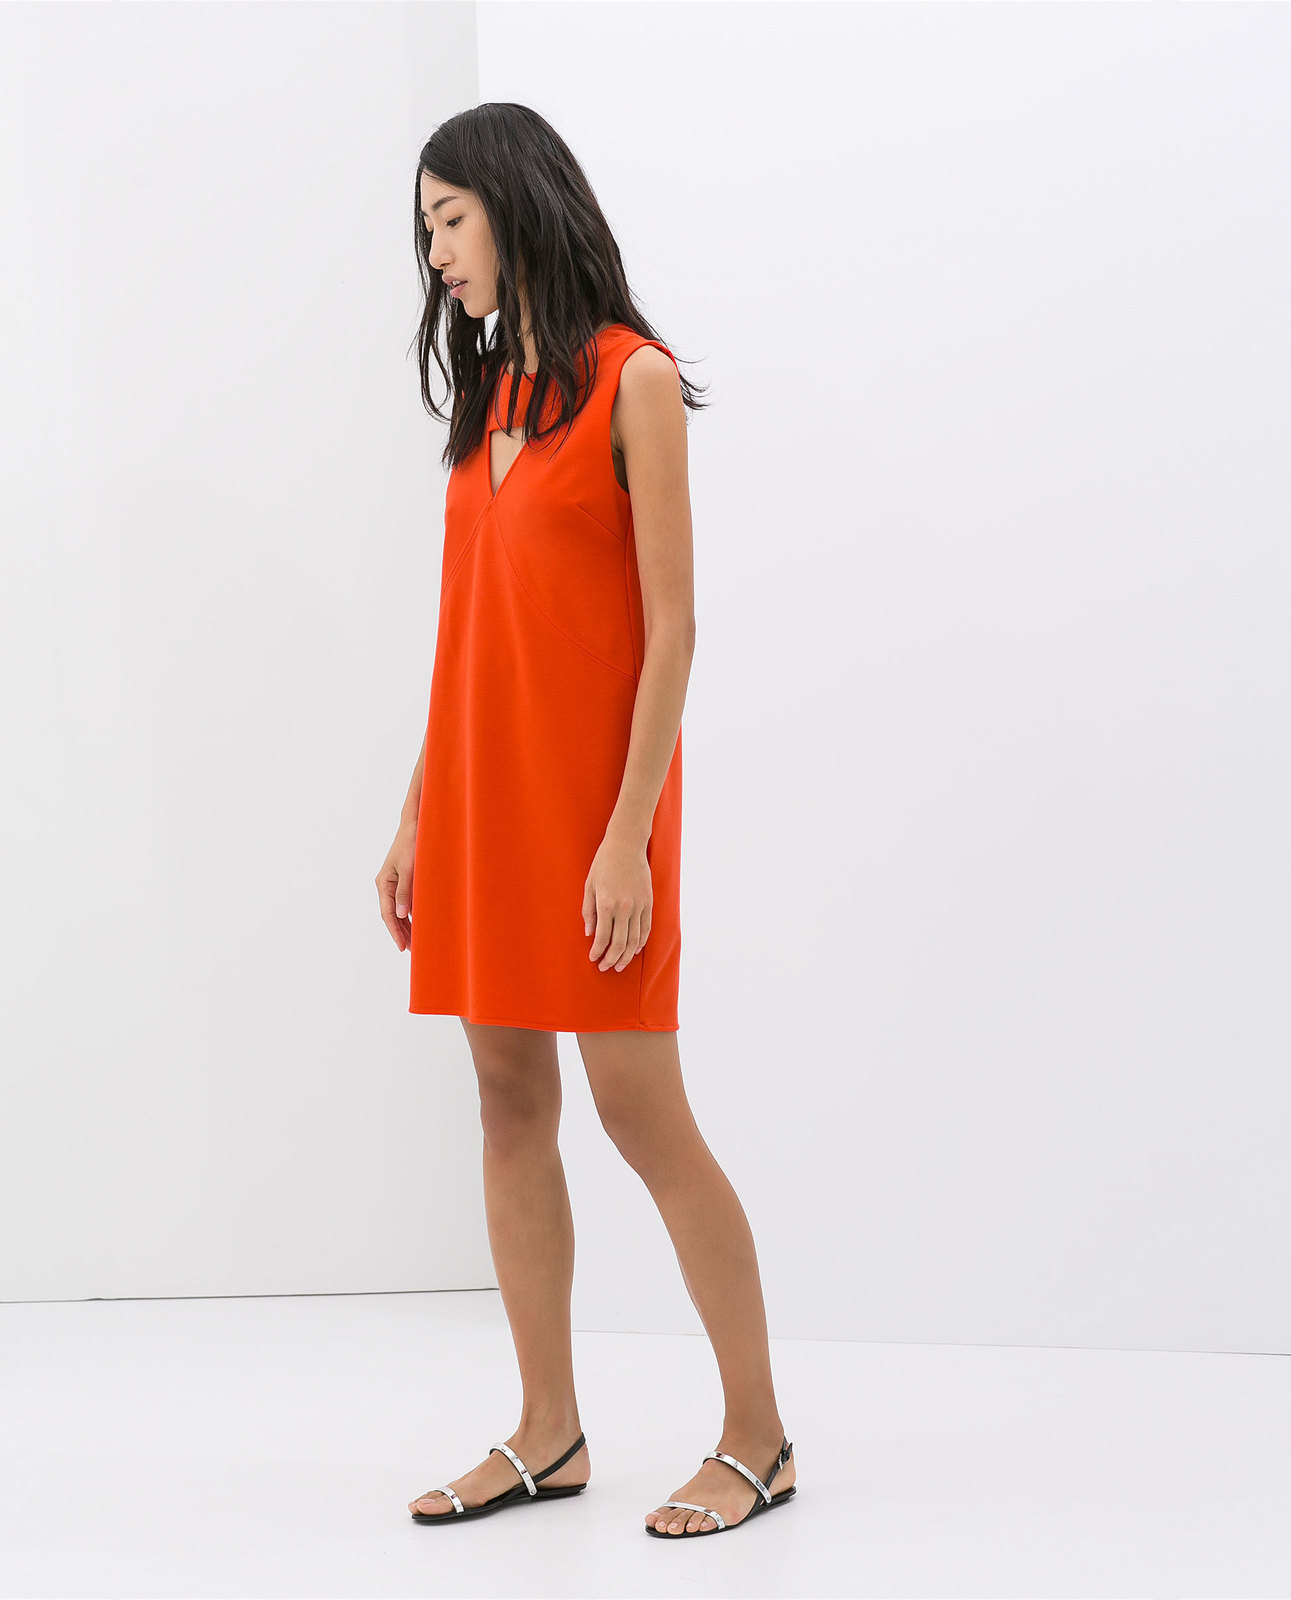 Zara hátul kivágott narancs ruha fotója